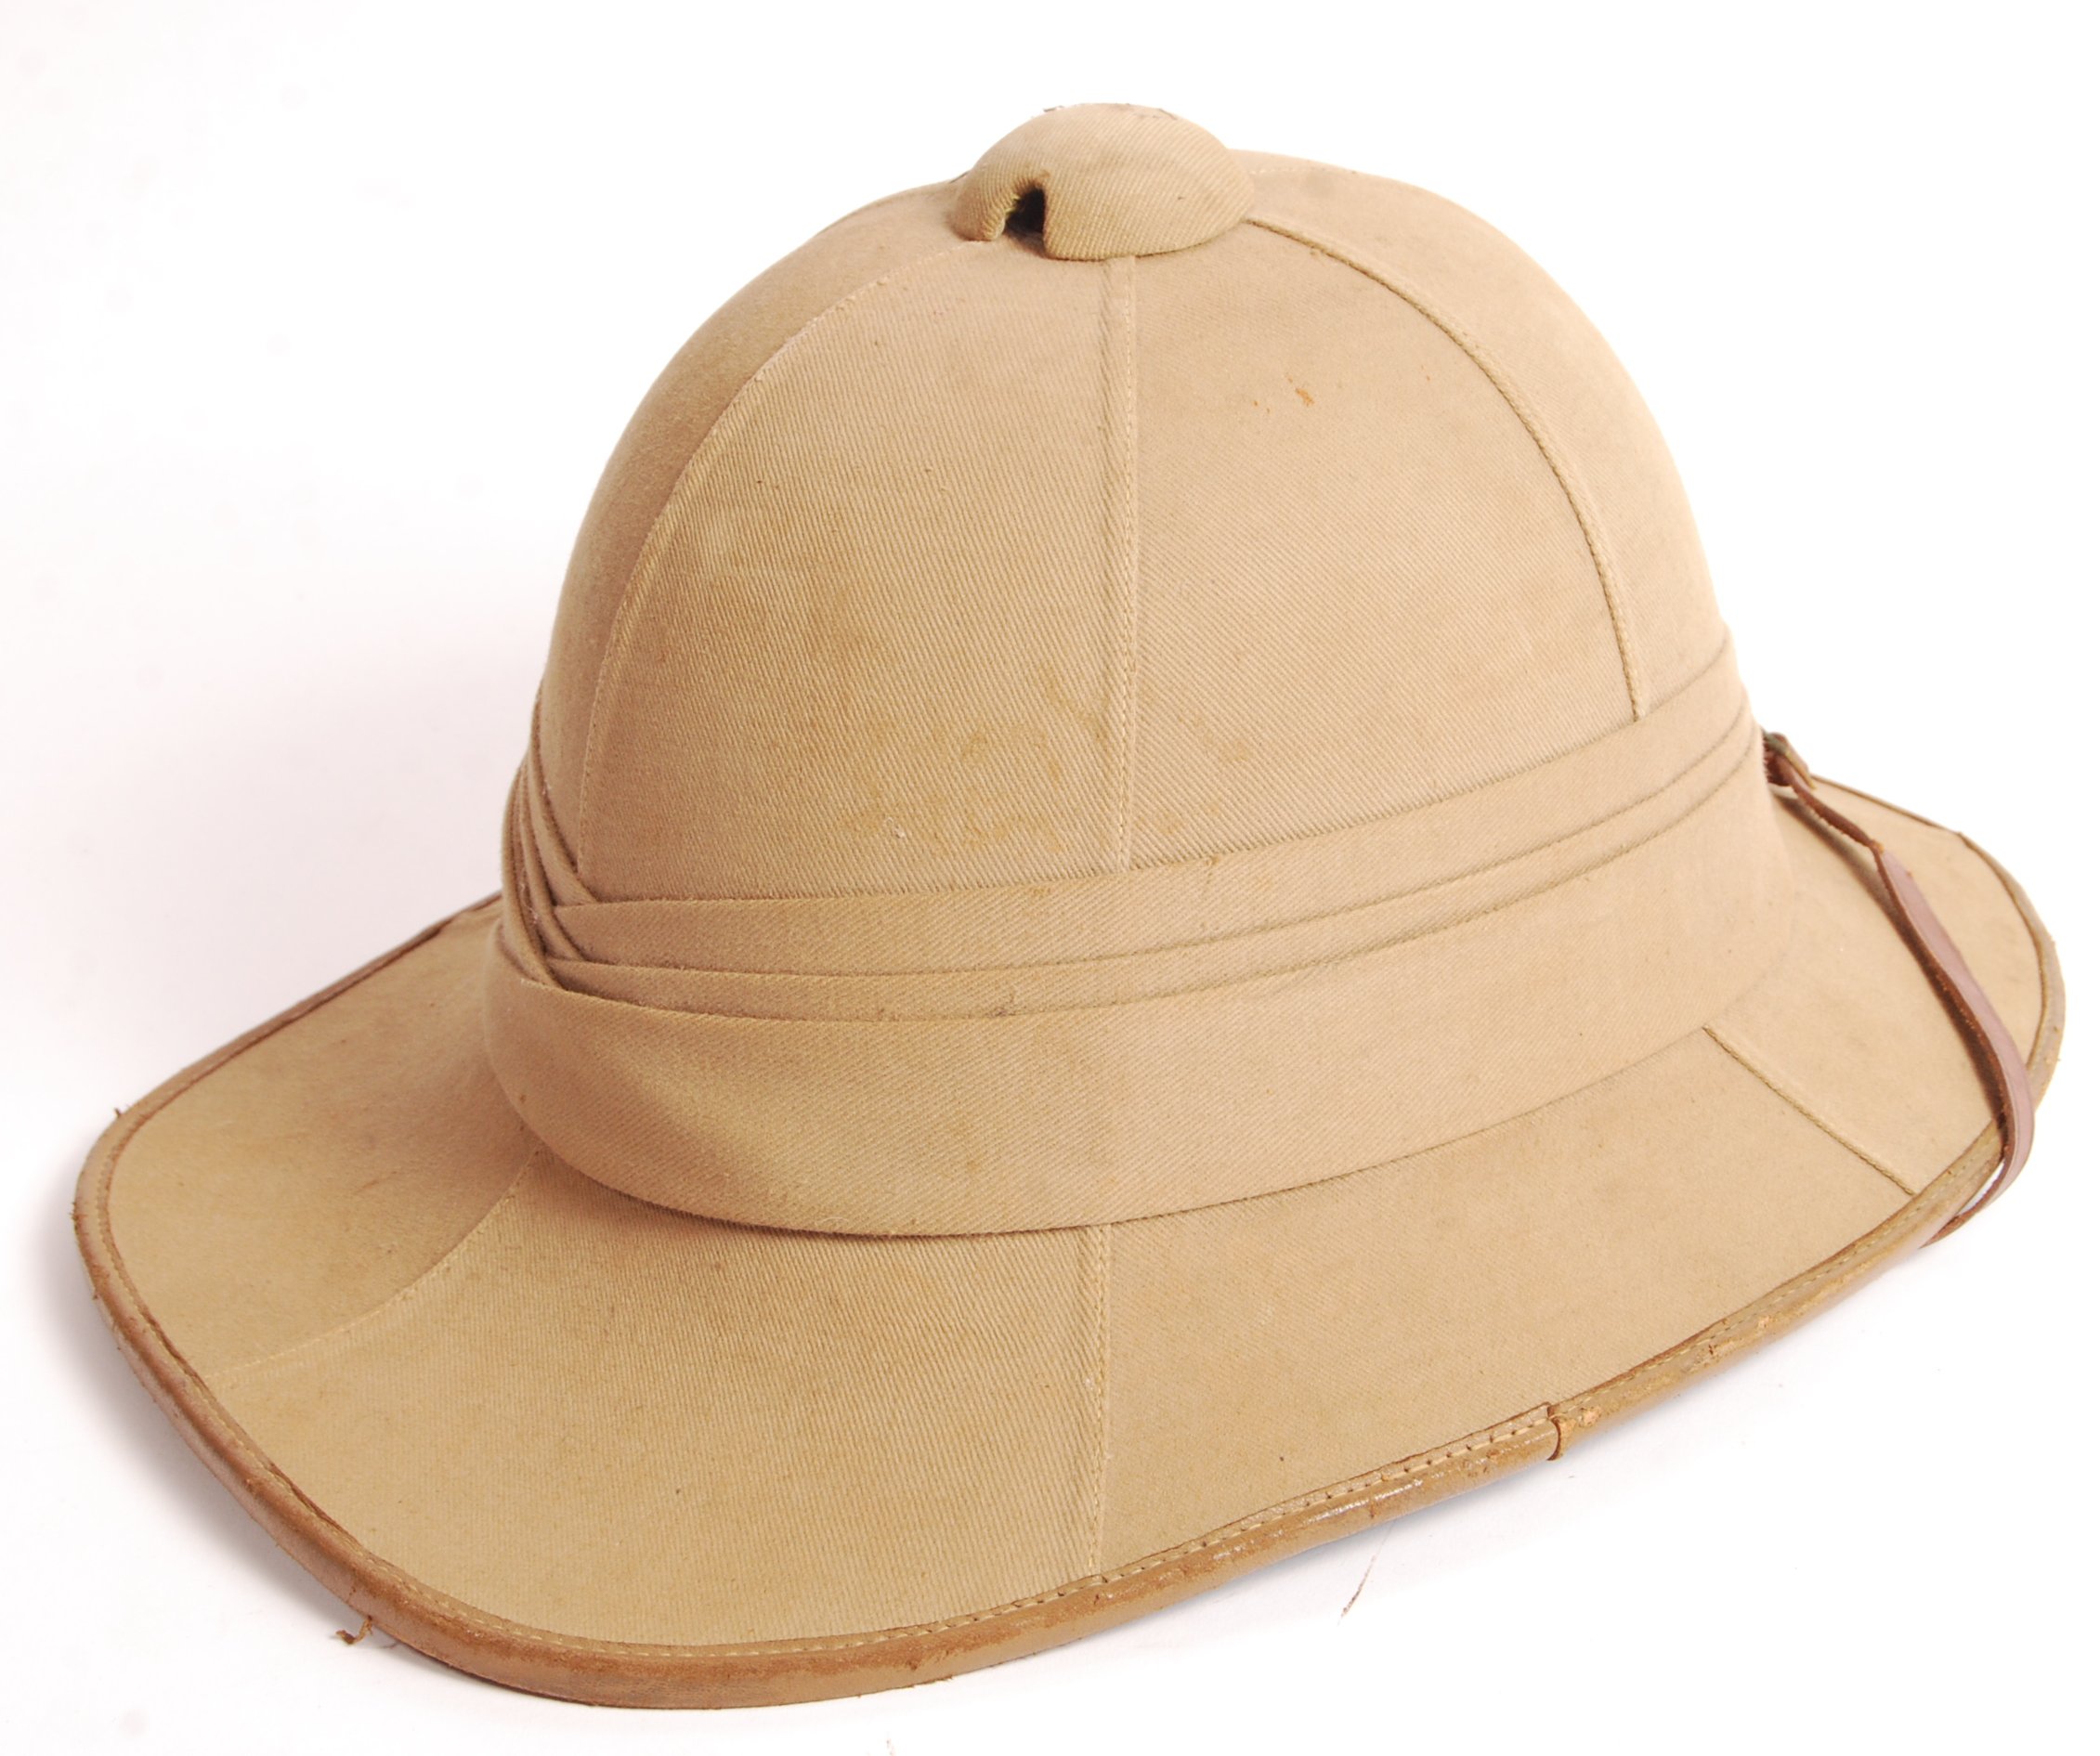 An original rare WWII Second World War uniform Pith helmet - with ...